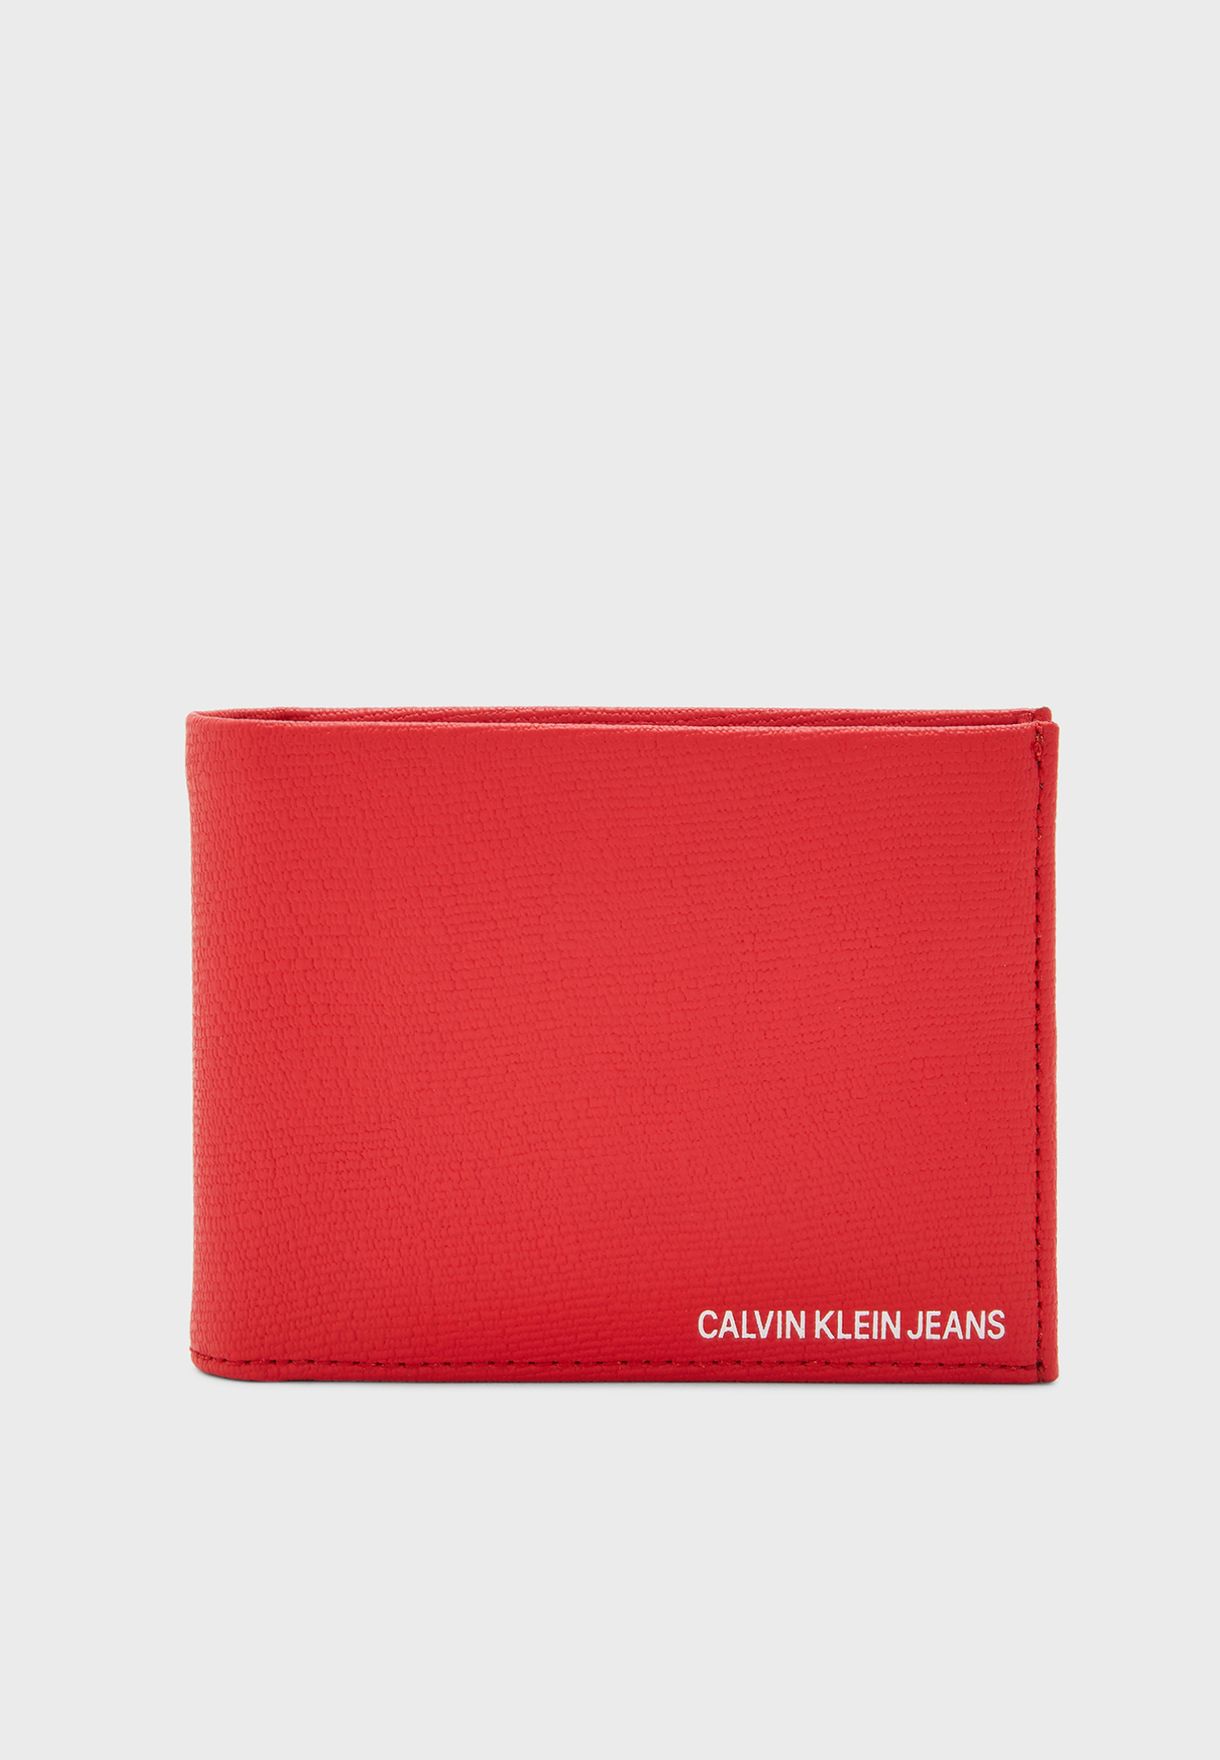 calvin klein wallet red